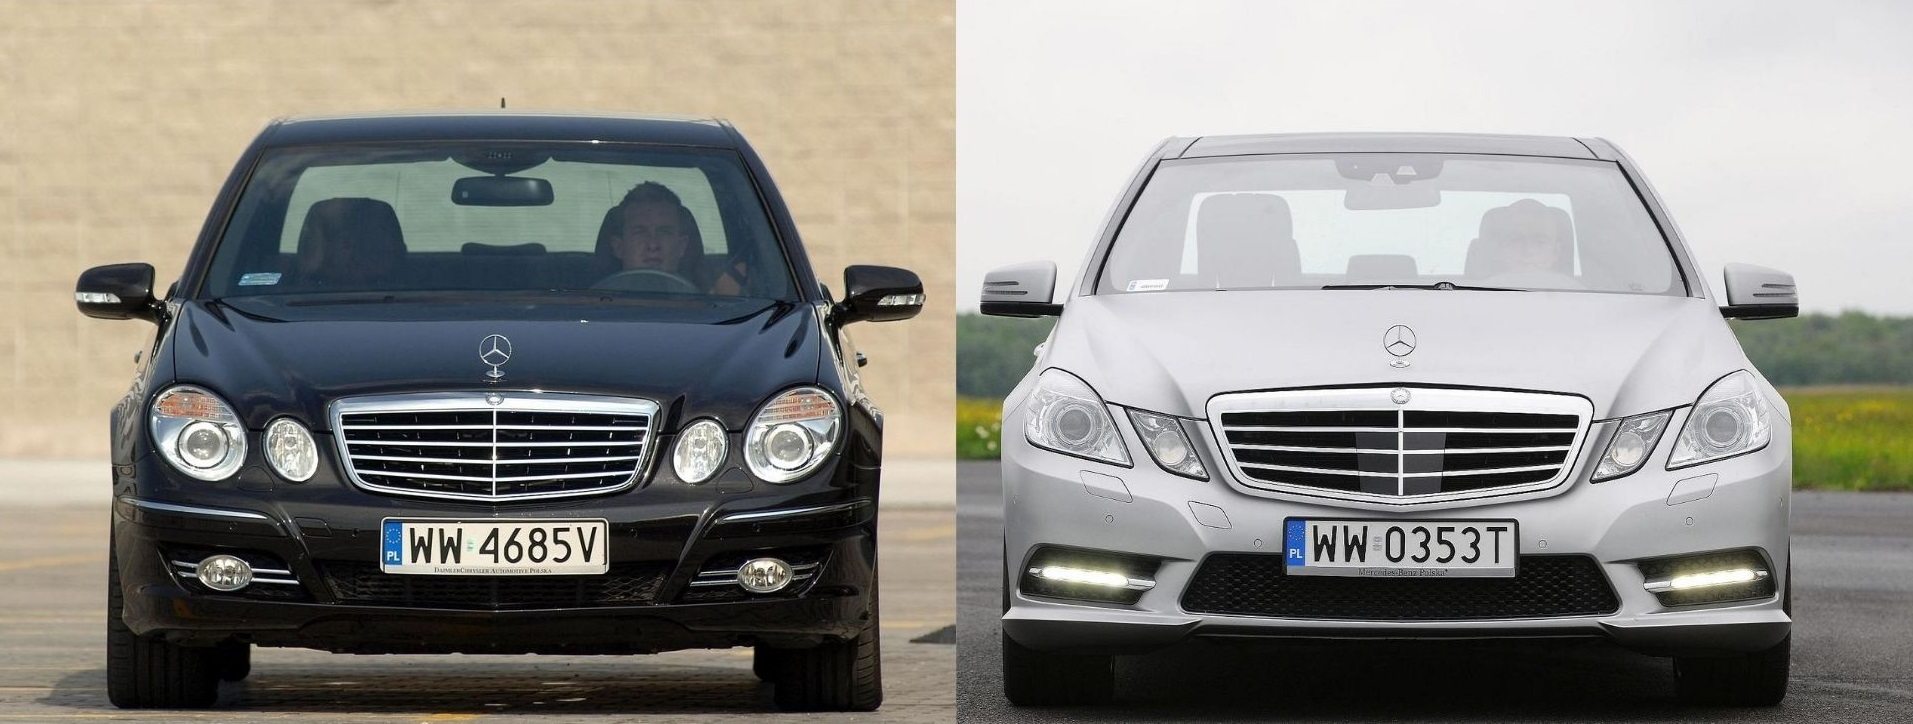 Używany Mercedes Klasy E (W211) I Mercedes Klasy E (W212) - Którego Wybrać?